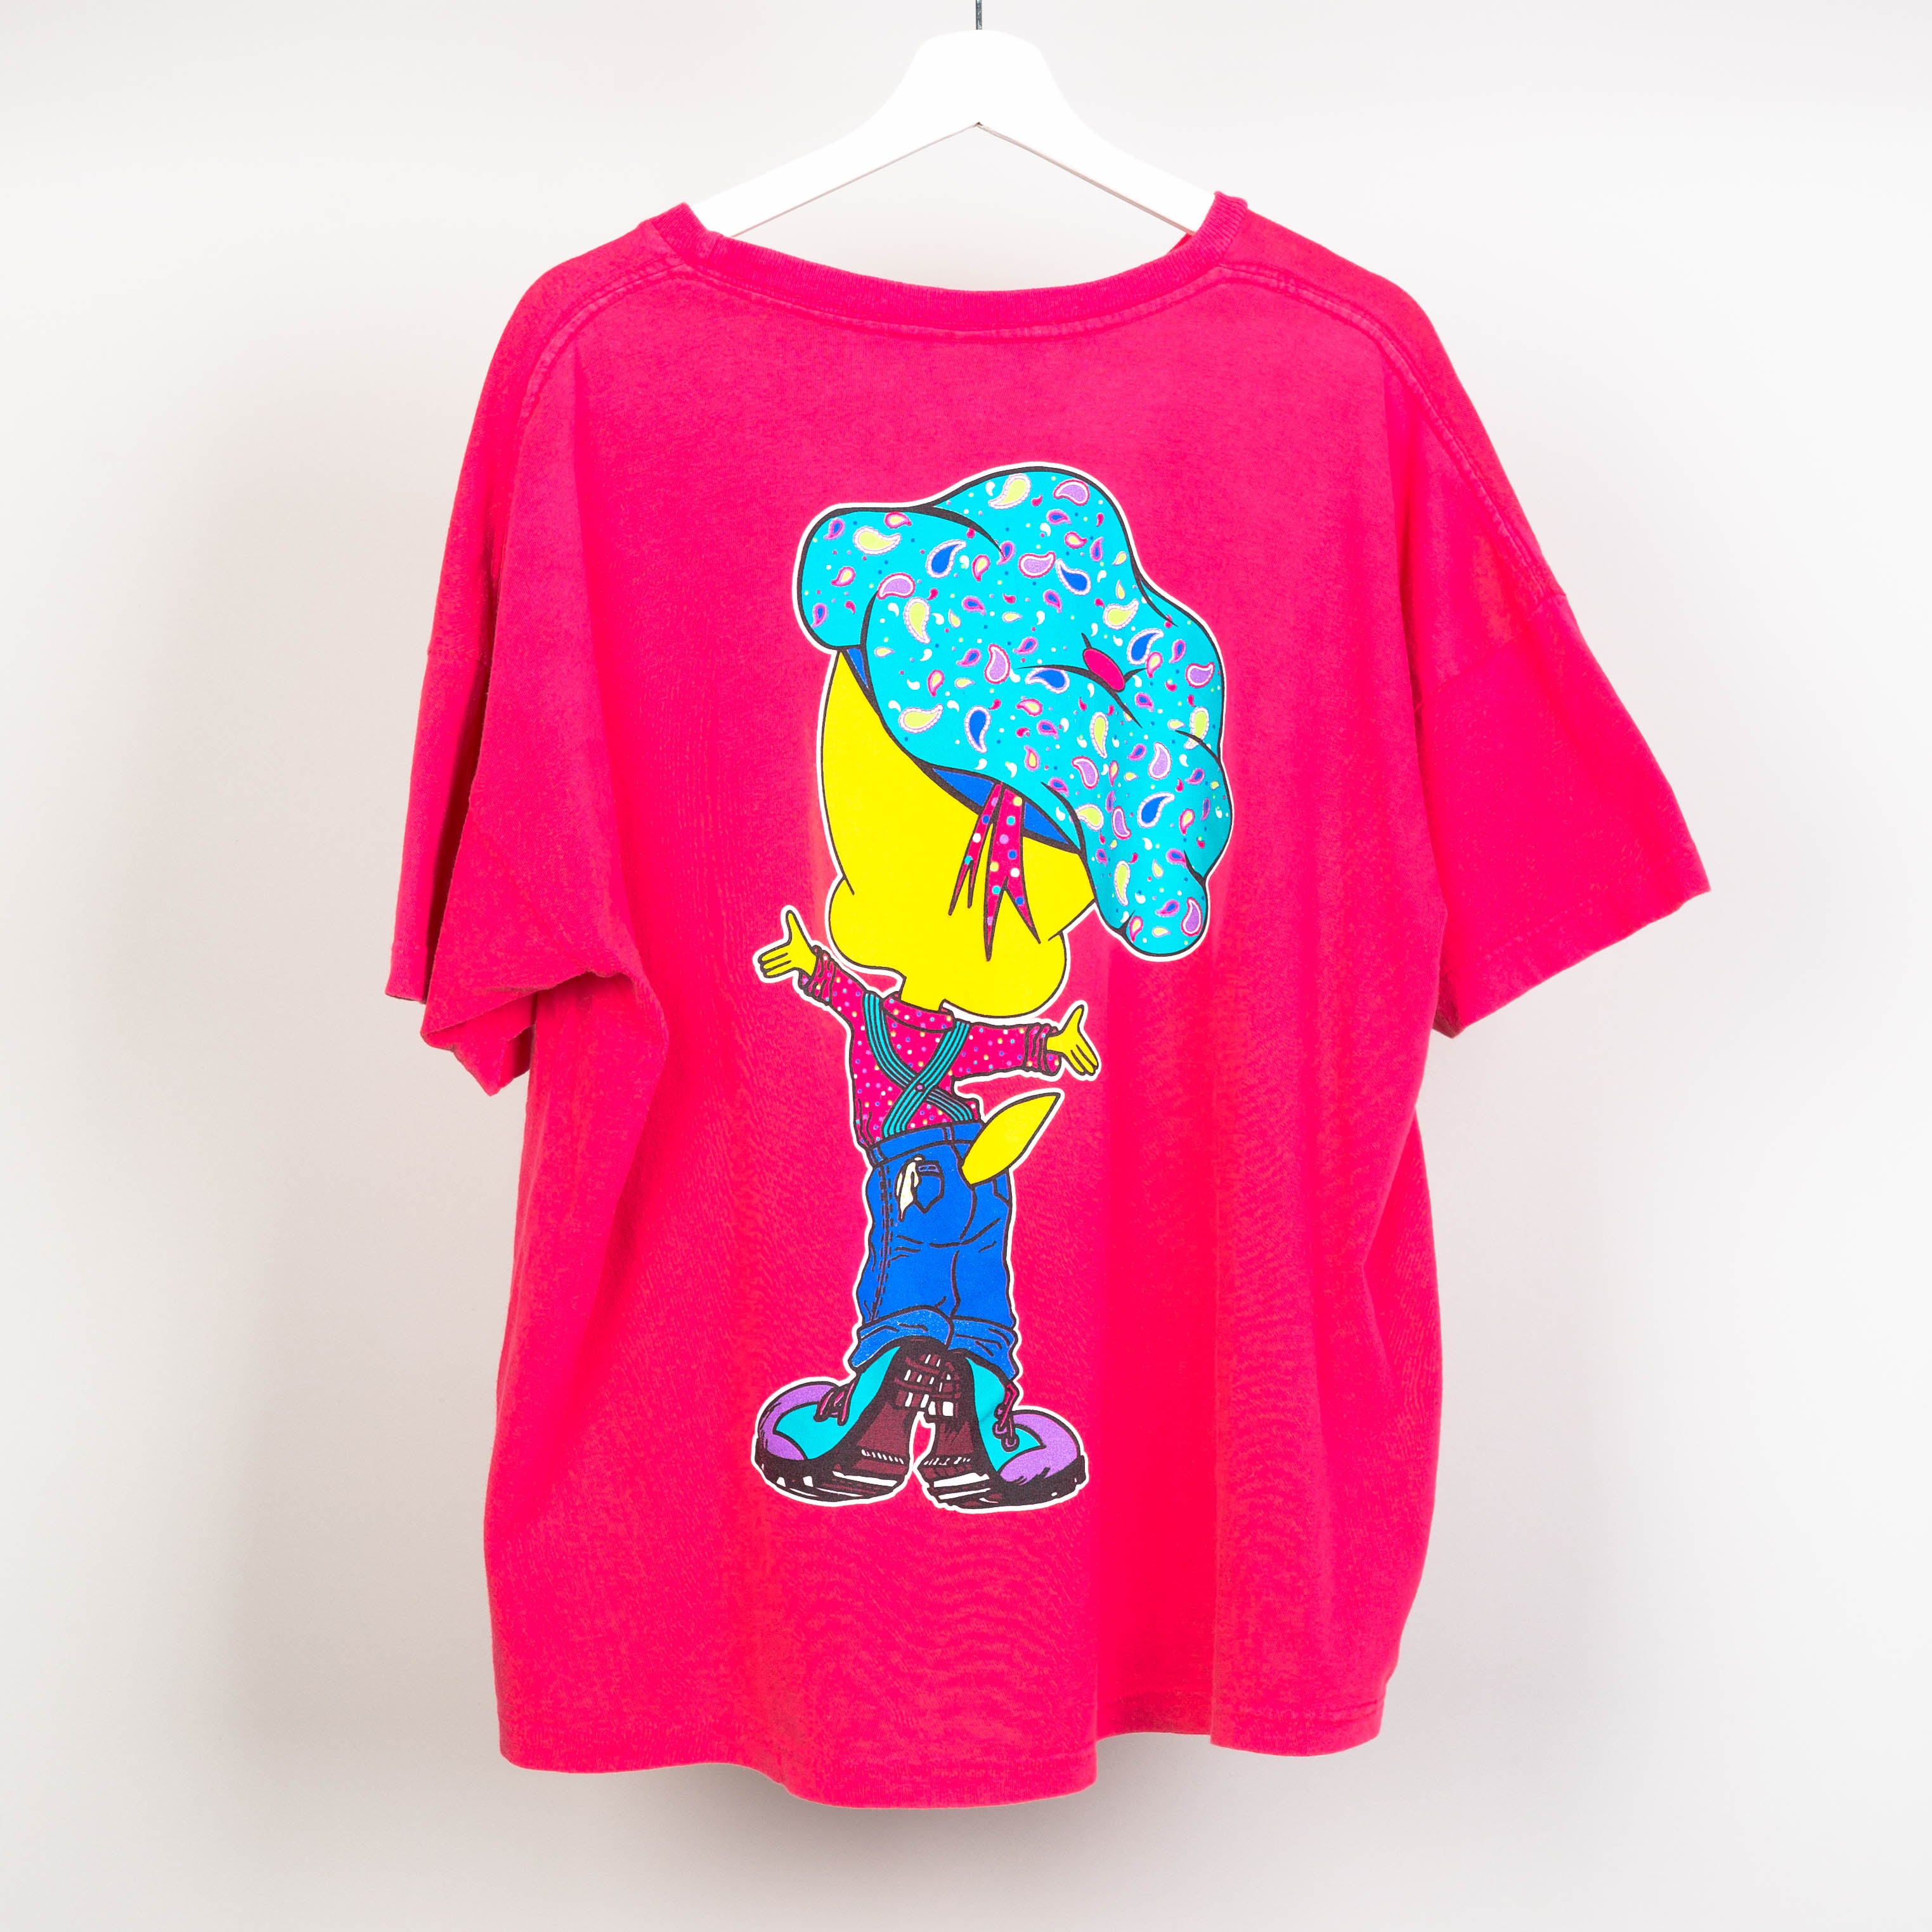 1994 Tweety Bird T-Shirt Size L